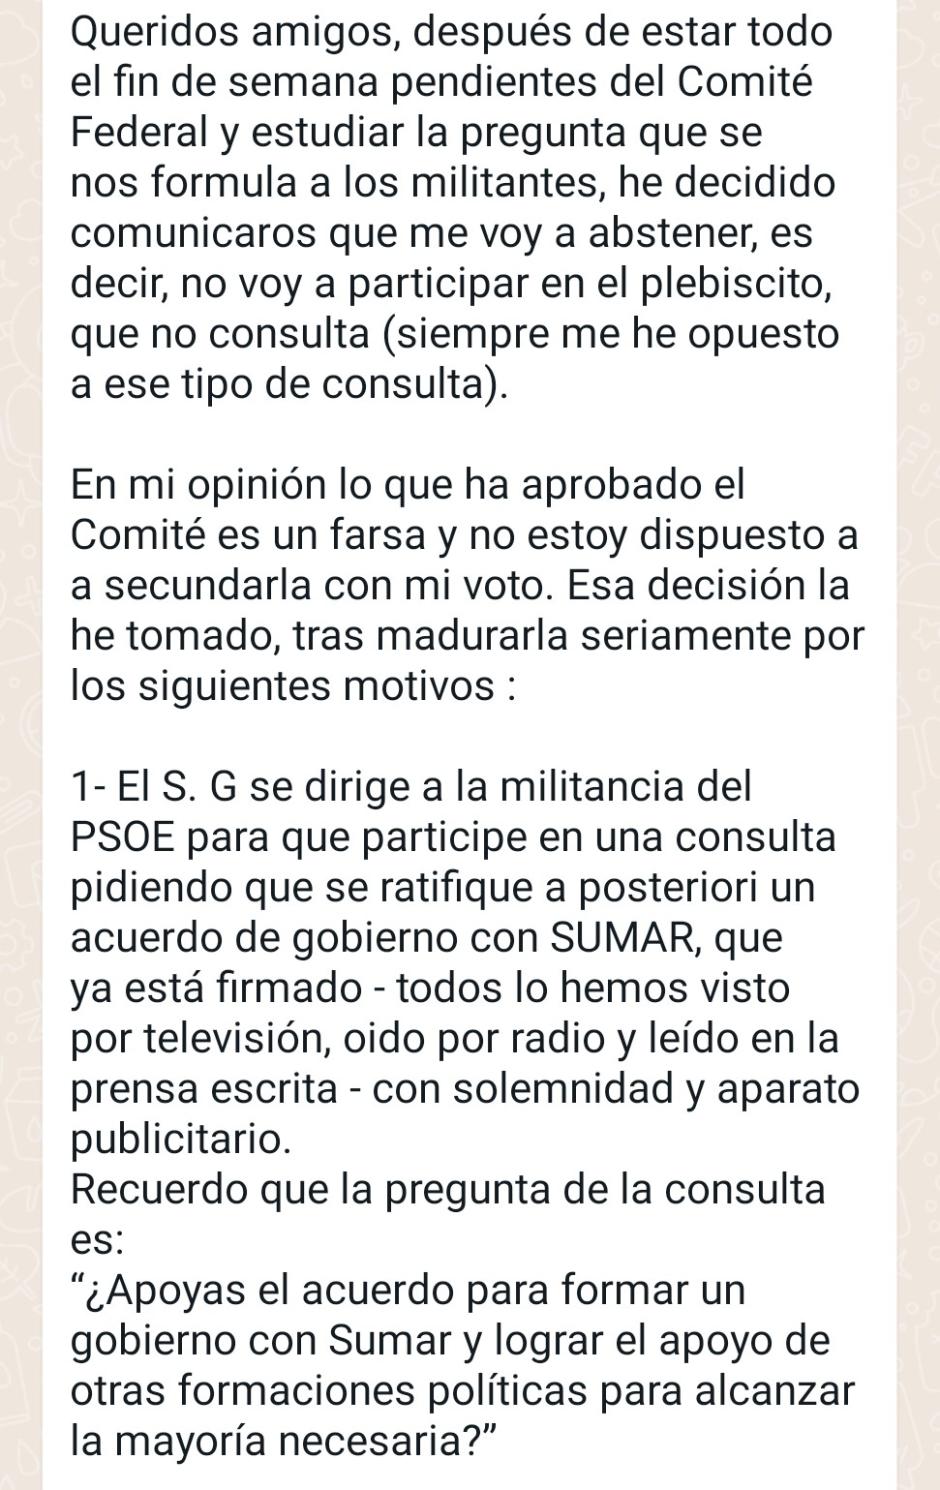 Primera parte de otro mensaje de un grupo privado de ex altos cargos del PSOE